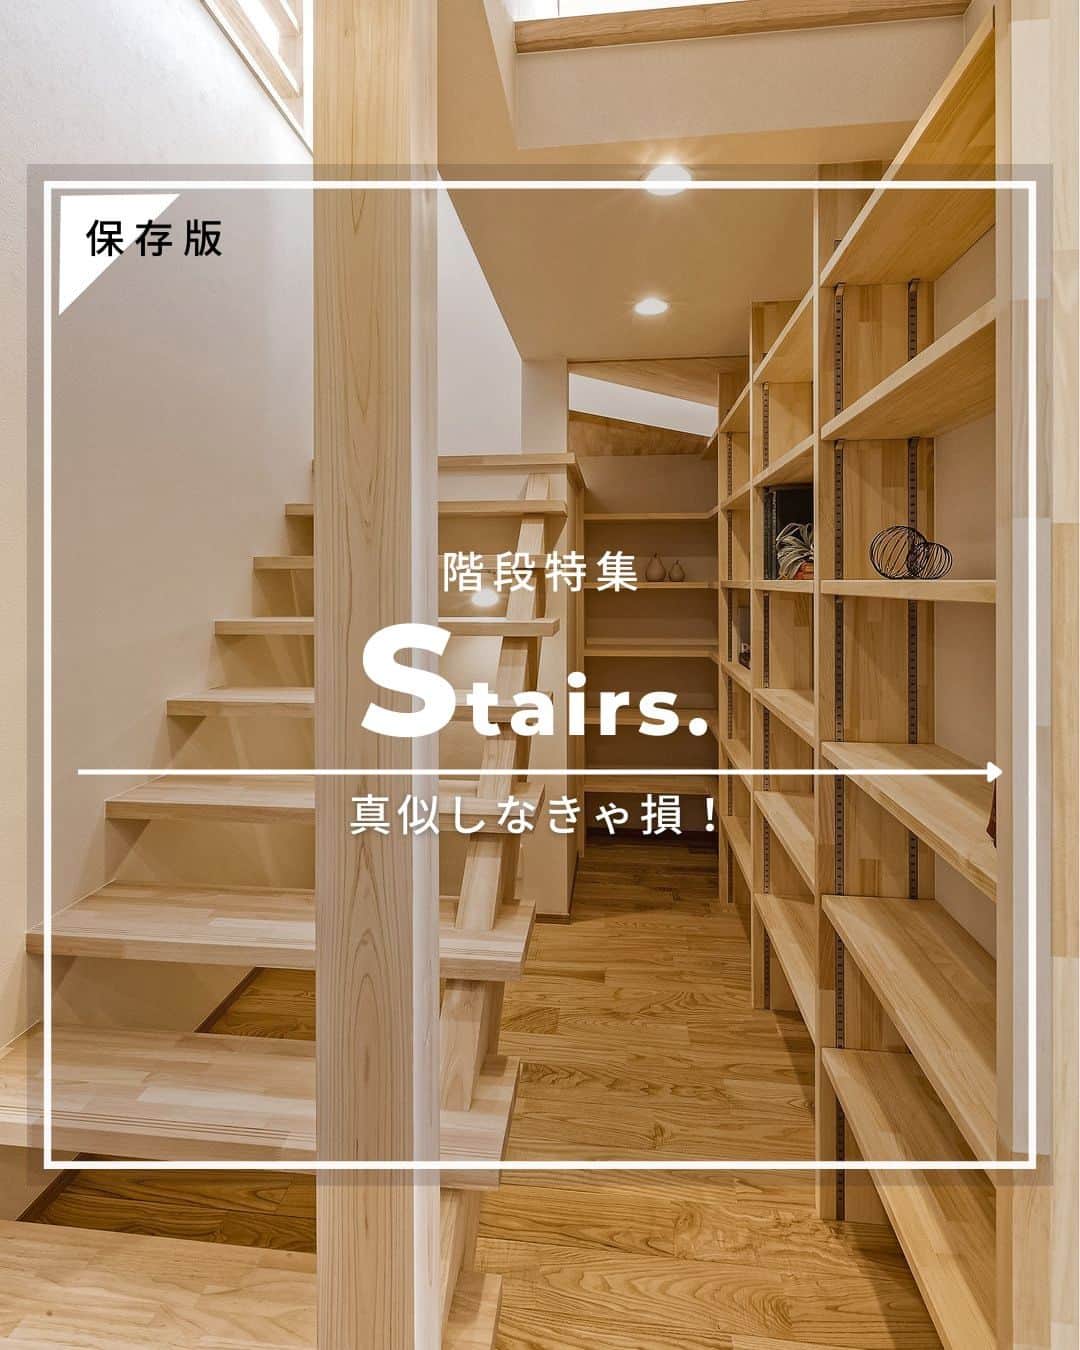 OKOCHI STYLE(香川県) のインスタグラム：「真似したい！ お部屋に馴染むデザインの階段特集✨  ーーーーーーーーー 香川県で木の家を建てる #大河内工務店  #施工事例 を多数ご紹介しています。 ▷ @okochi.komuten  創業1953年。 #上質な家 をていねいに。 #自然素材 と技術にこだわった家づくりをしています。  🗾施工エリア 香川県・愛媛県（四国中央市） その他エリアはご相談ください  お問い合わせやご質問は DM、コメント、HPにてお気軽にお問い合わせください。  ーーーーーーーーー 資材倉庫をリノベーションした #わが家ギャラリー木きん堂 ギャラリーのご案内やcafeの情報をお届けします🌟 ▷ @mokkindo.cafe ーーーーーーーーー  #香川県 で #注文住宅 を建てるなら大河内工務店 ▷ @okochi.komuten  #一級建築士事務所 #自由設計 #木の家 #木の家づくり #自然素材の家 #無垢材 #新築 #新築一戸建て #マイホーム #マイホーム計画 #インテリア #家づくり #工務店だからつくれる家 #暮らしを楽しむ #香川新築 #香川注文住宅 #香川イベント #香川の家 #香川県工務店  #階段」